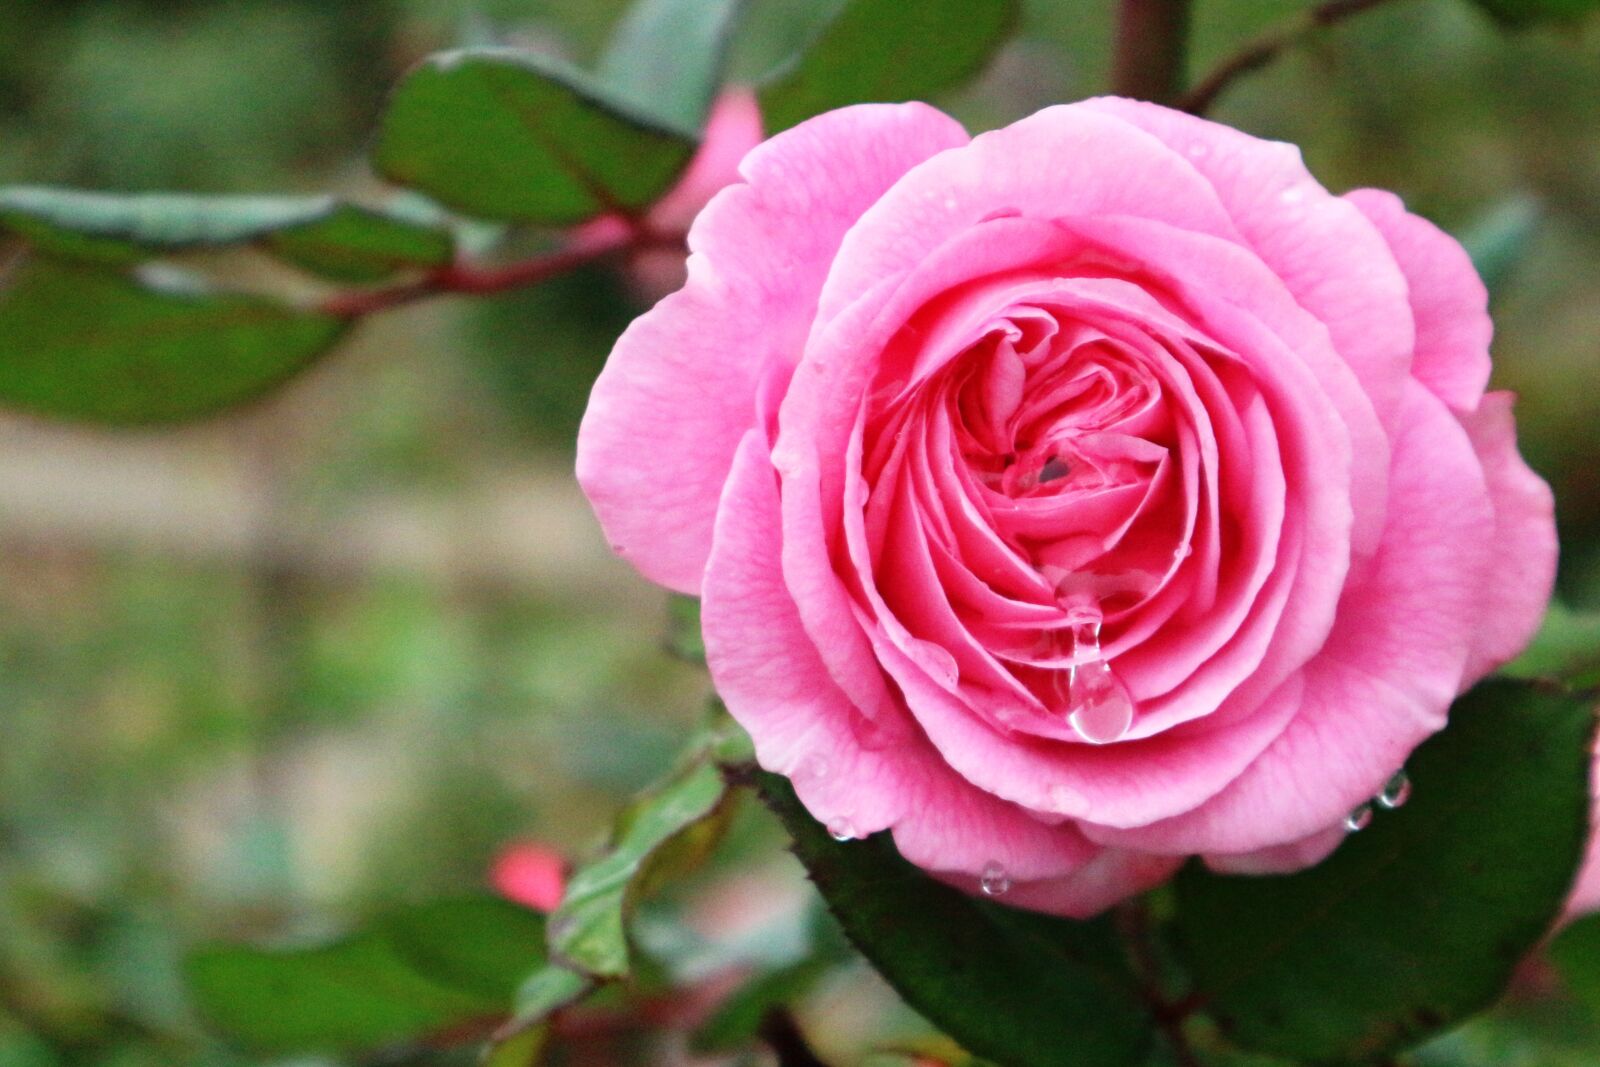 Canon EOS M10 sample photo. Rose, bloom, garden photography